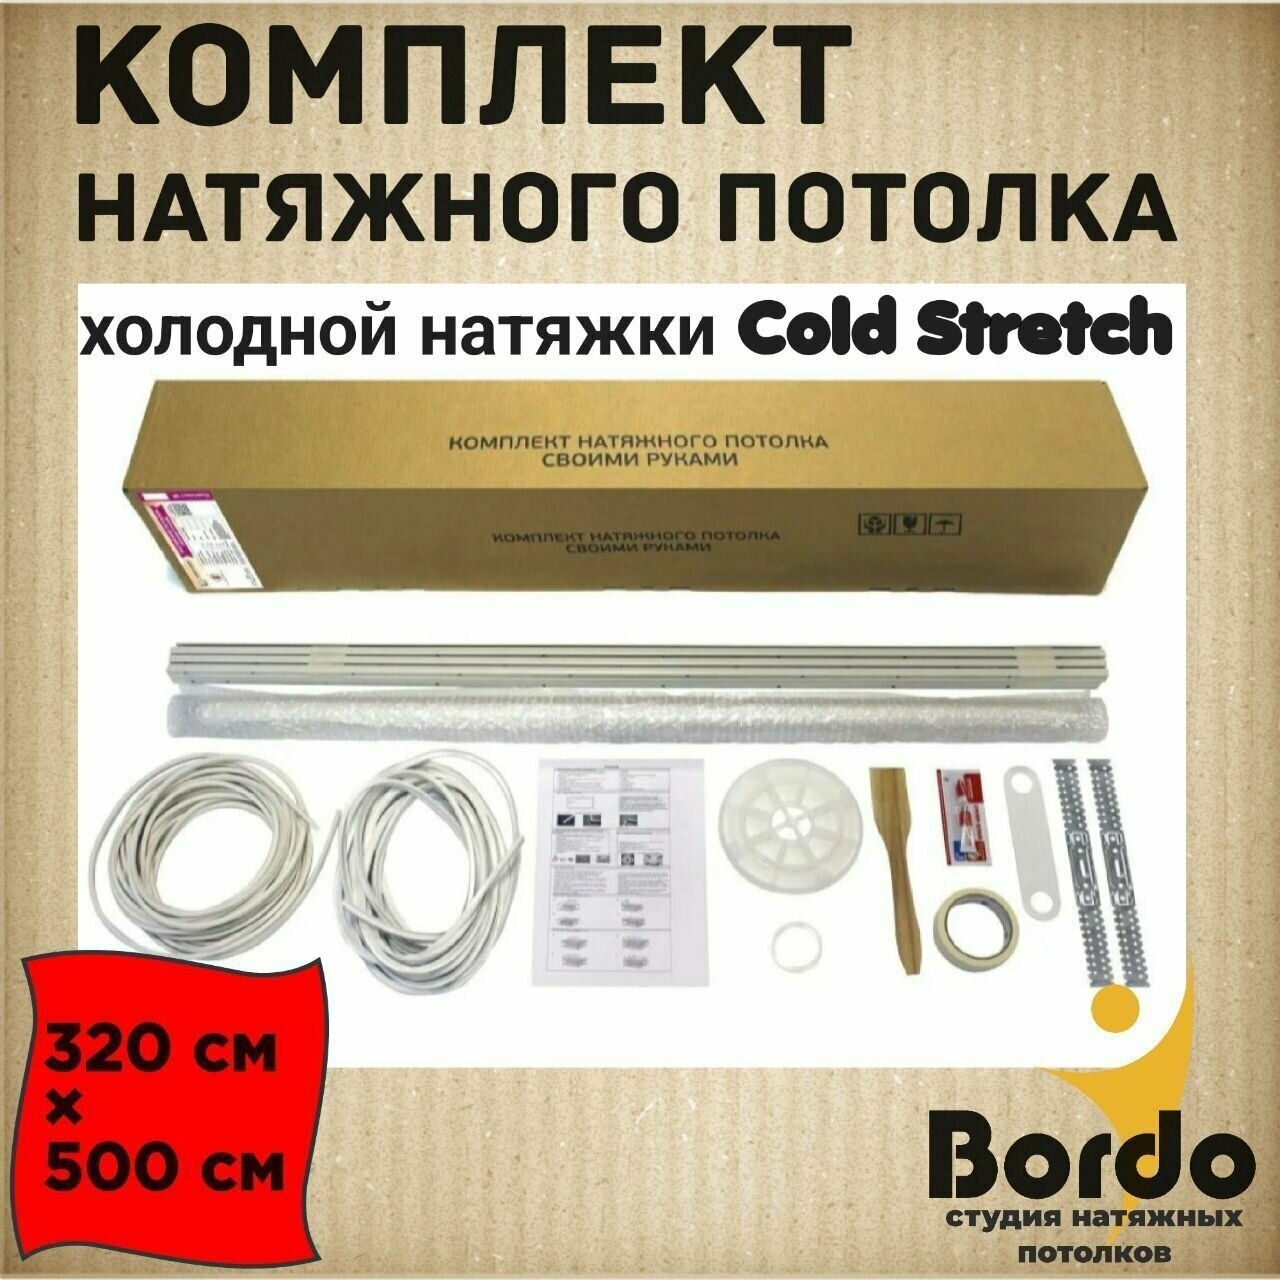 Комплект натяжного потолка холодной натяжки Cold Stretch 320*500 см